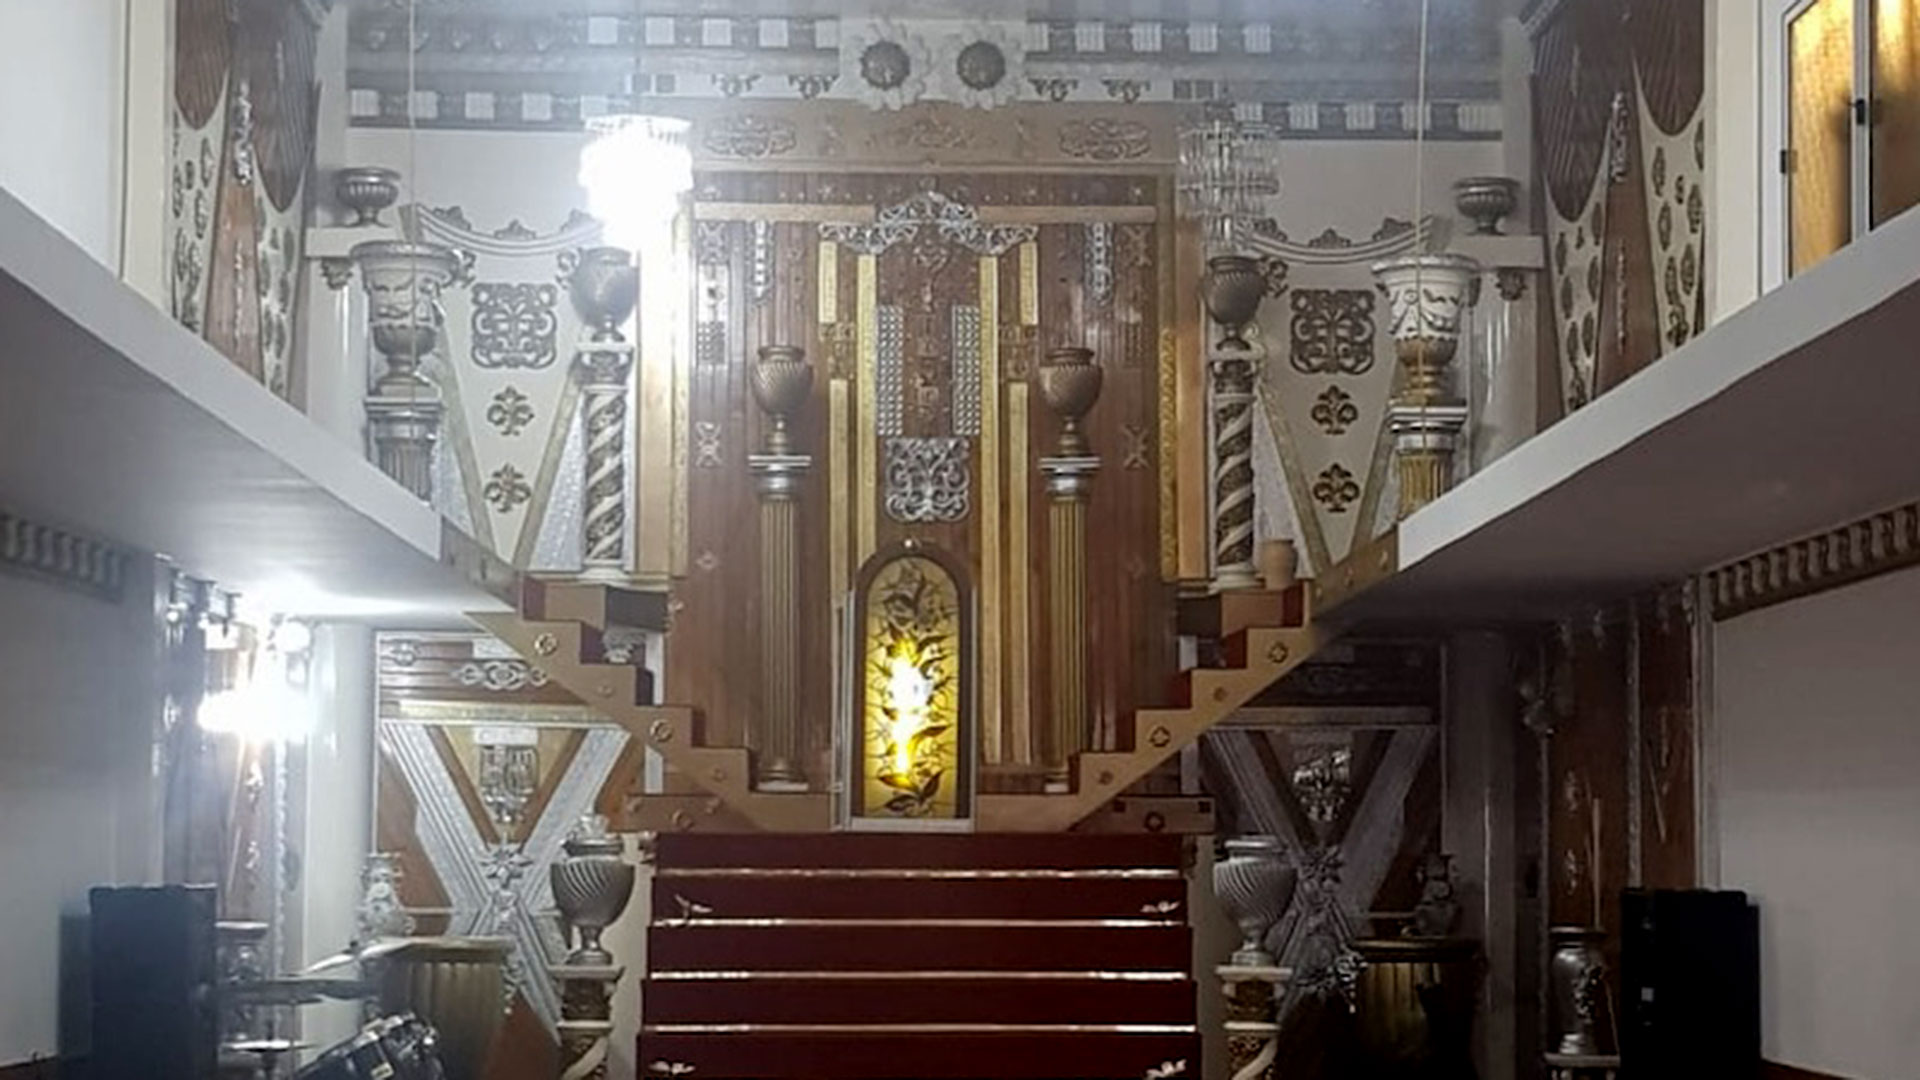 El templo de San Justo donde operaba la organización